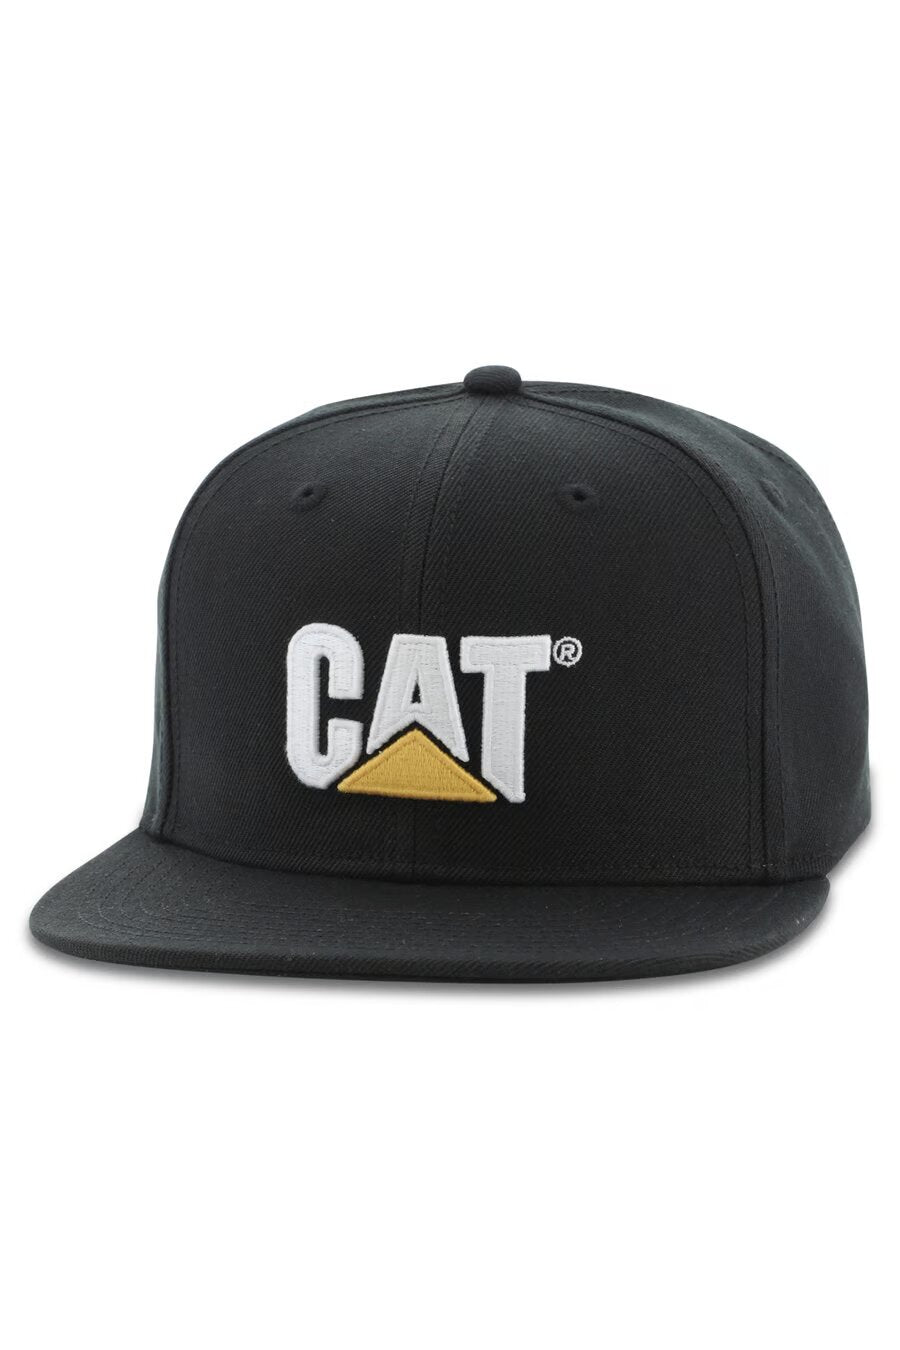 CAT Sheridan Flat Bill Caps